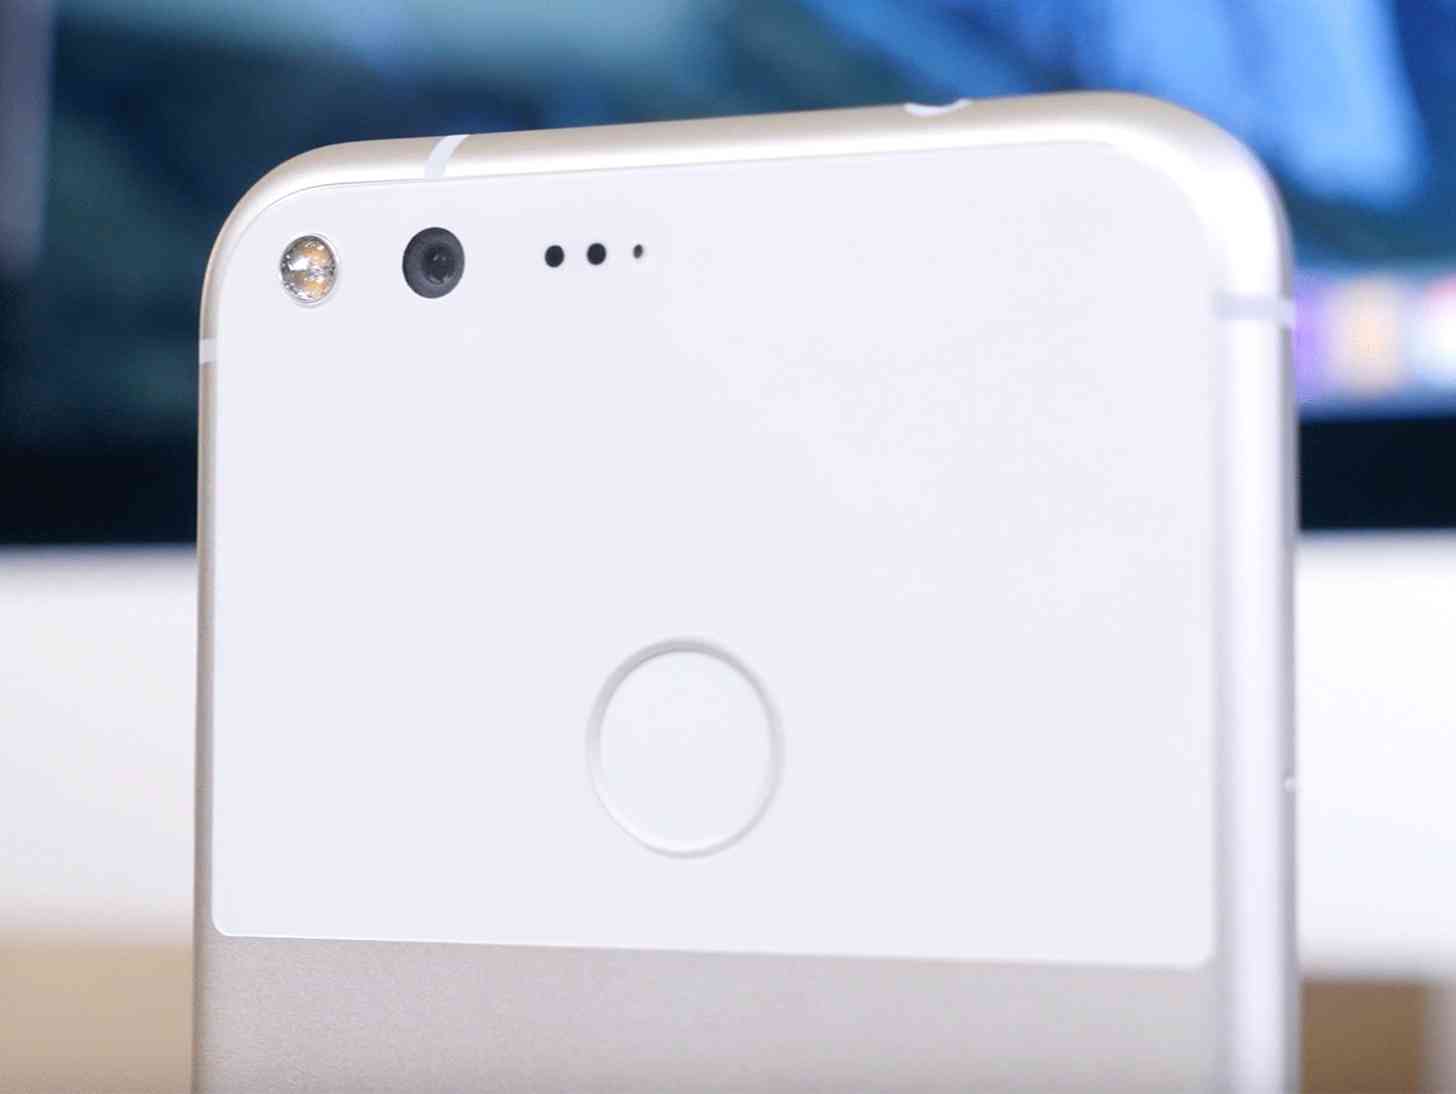 Google Pixel XL camera